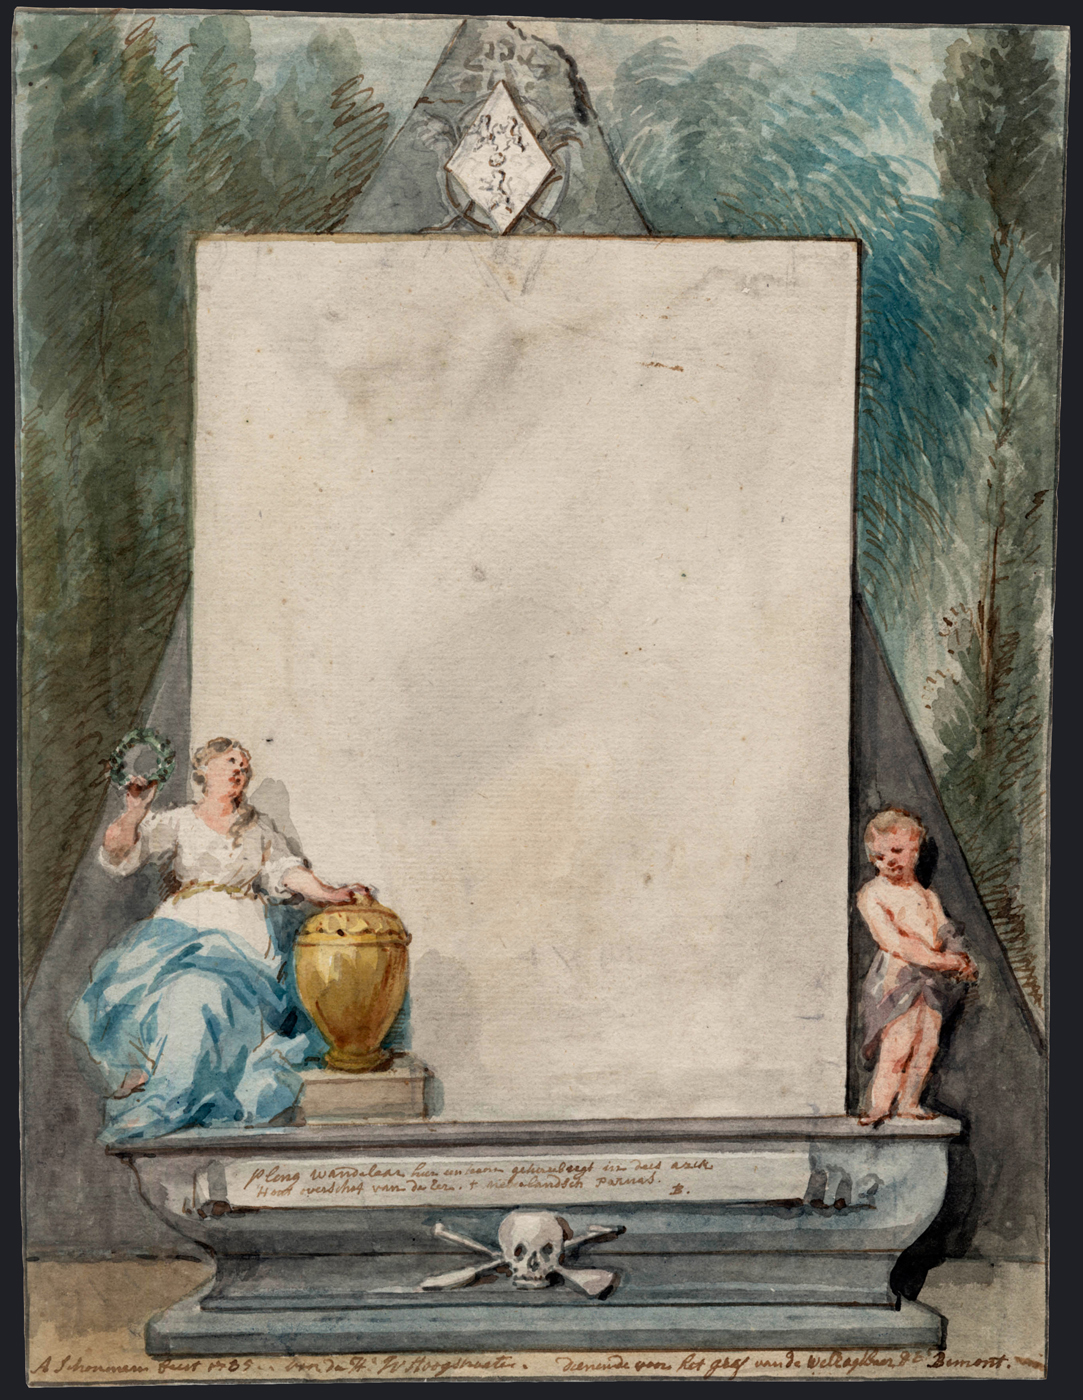 Aert Schouman: Návrh náhrobku / křída, pero, hnědý inkoust a akvarel na papíře / č. kat. 20 / Christie's Amsterdam 13. 5. 2015 / odhad 1200 – 1800 EUR / cena 750 EUR